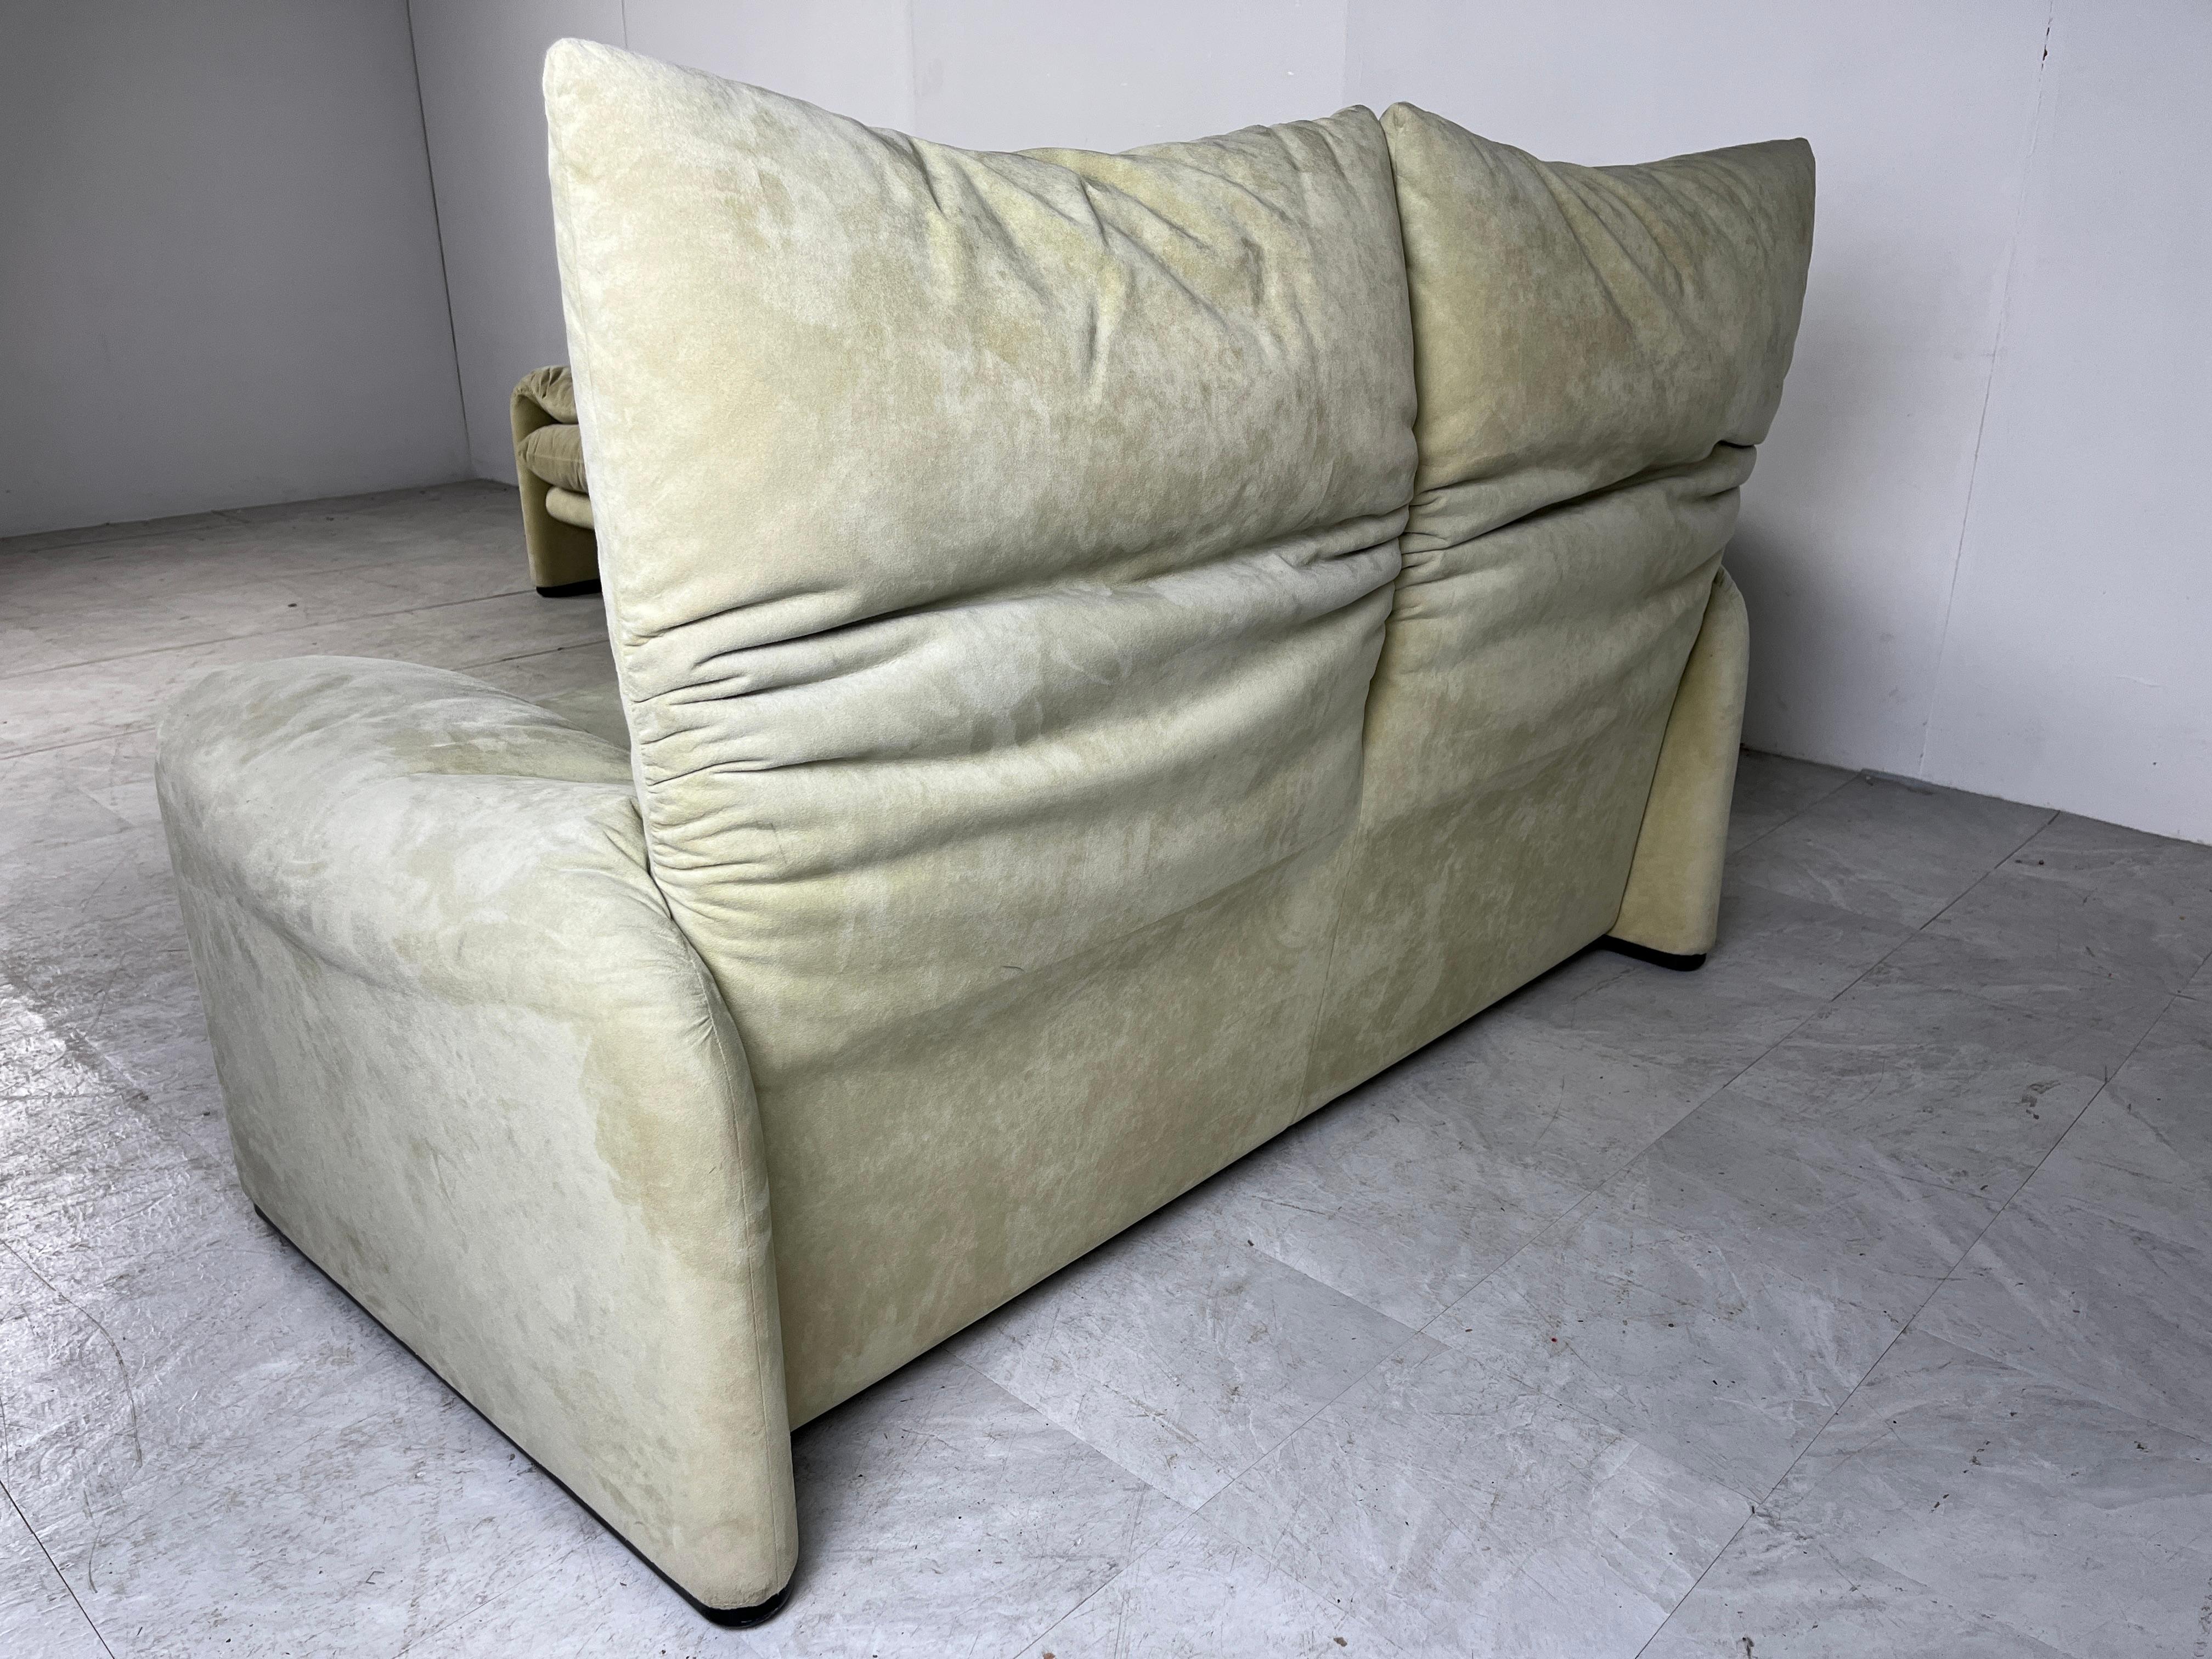 Maralunga sofa set by Vico Magistretti for Cassina 1